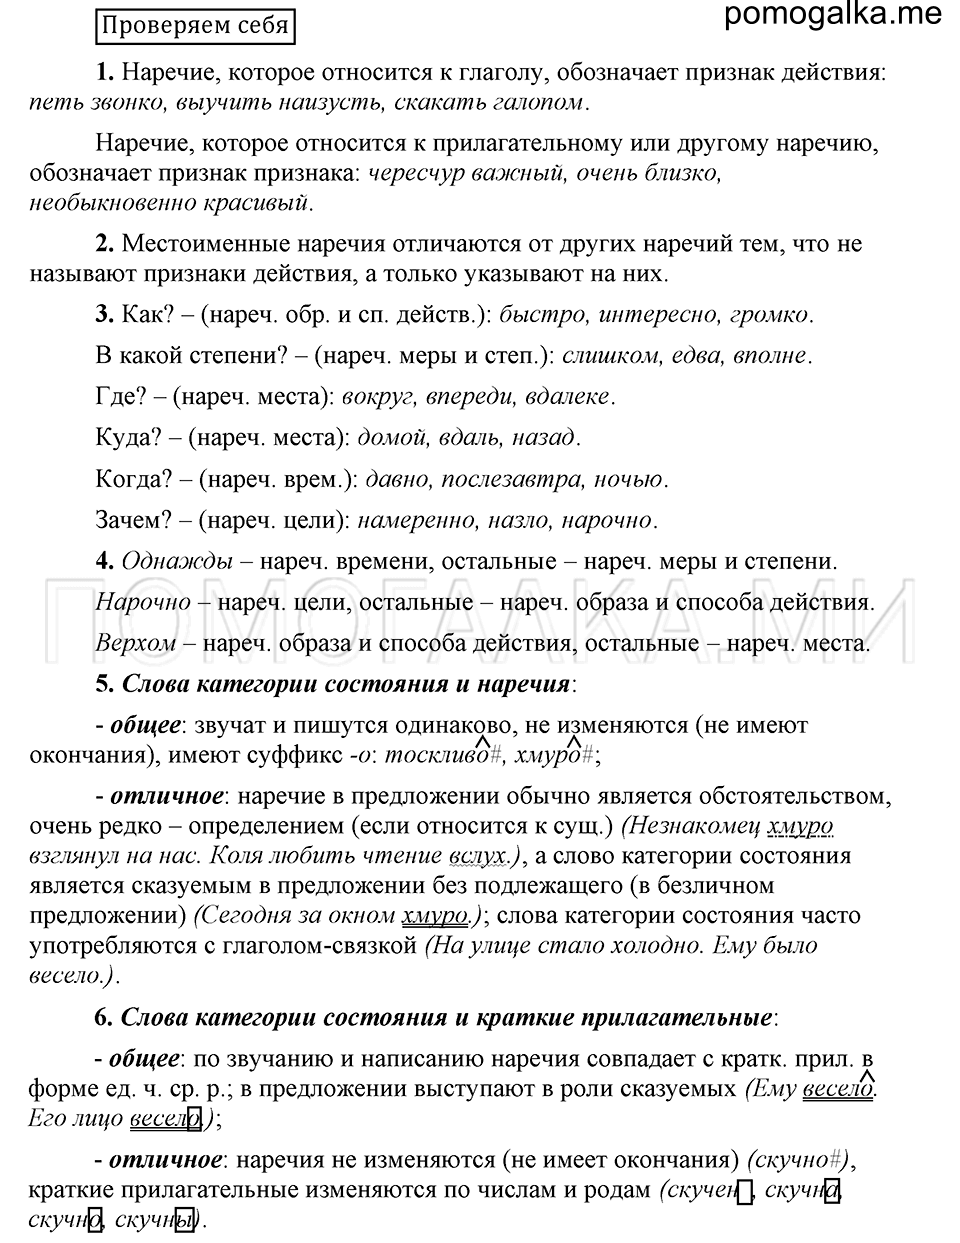 Страница 120, Проверяем себя, русский язык 6 класс Быстрова, Кибирева 2 часть 2019 год